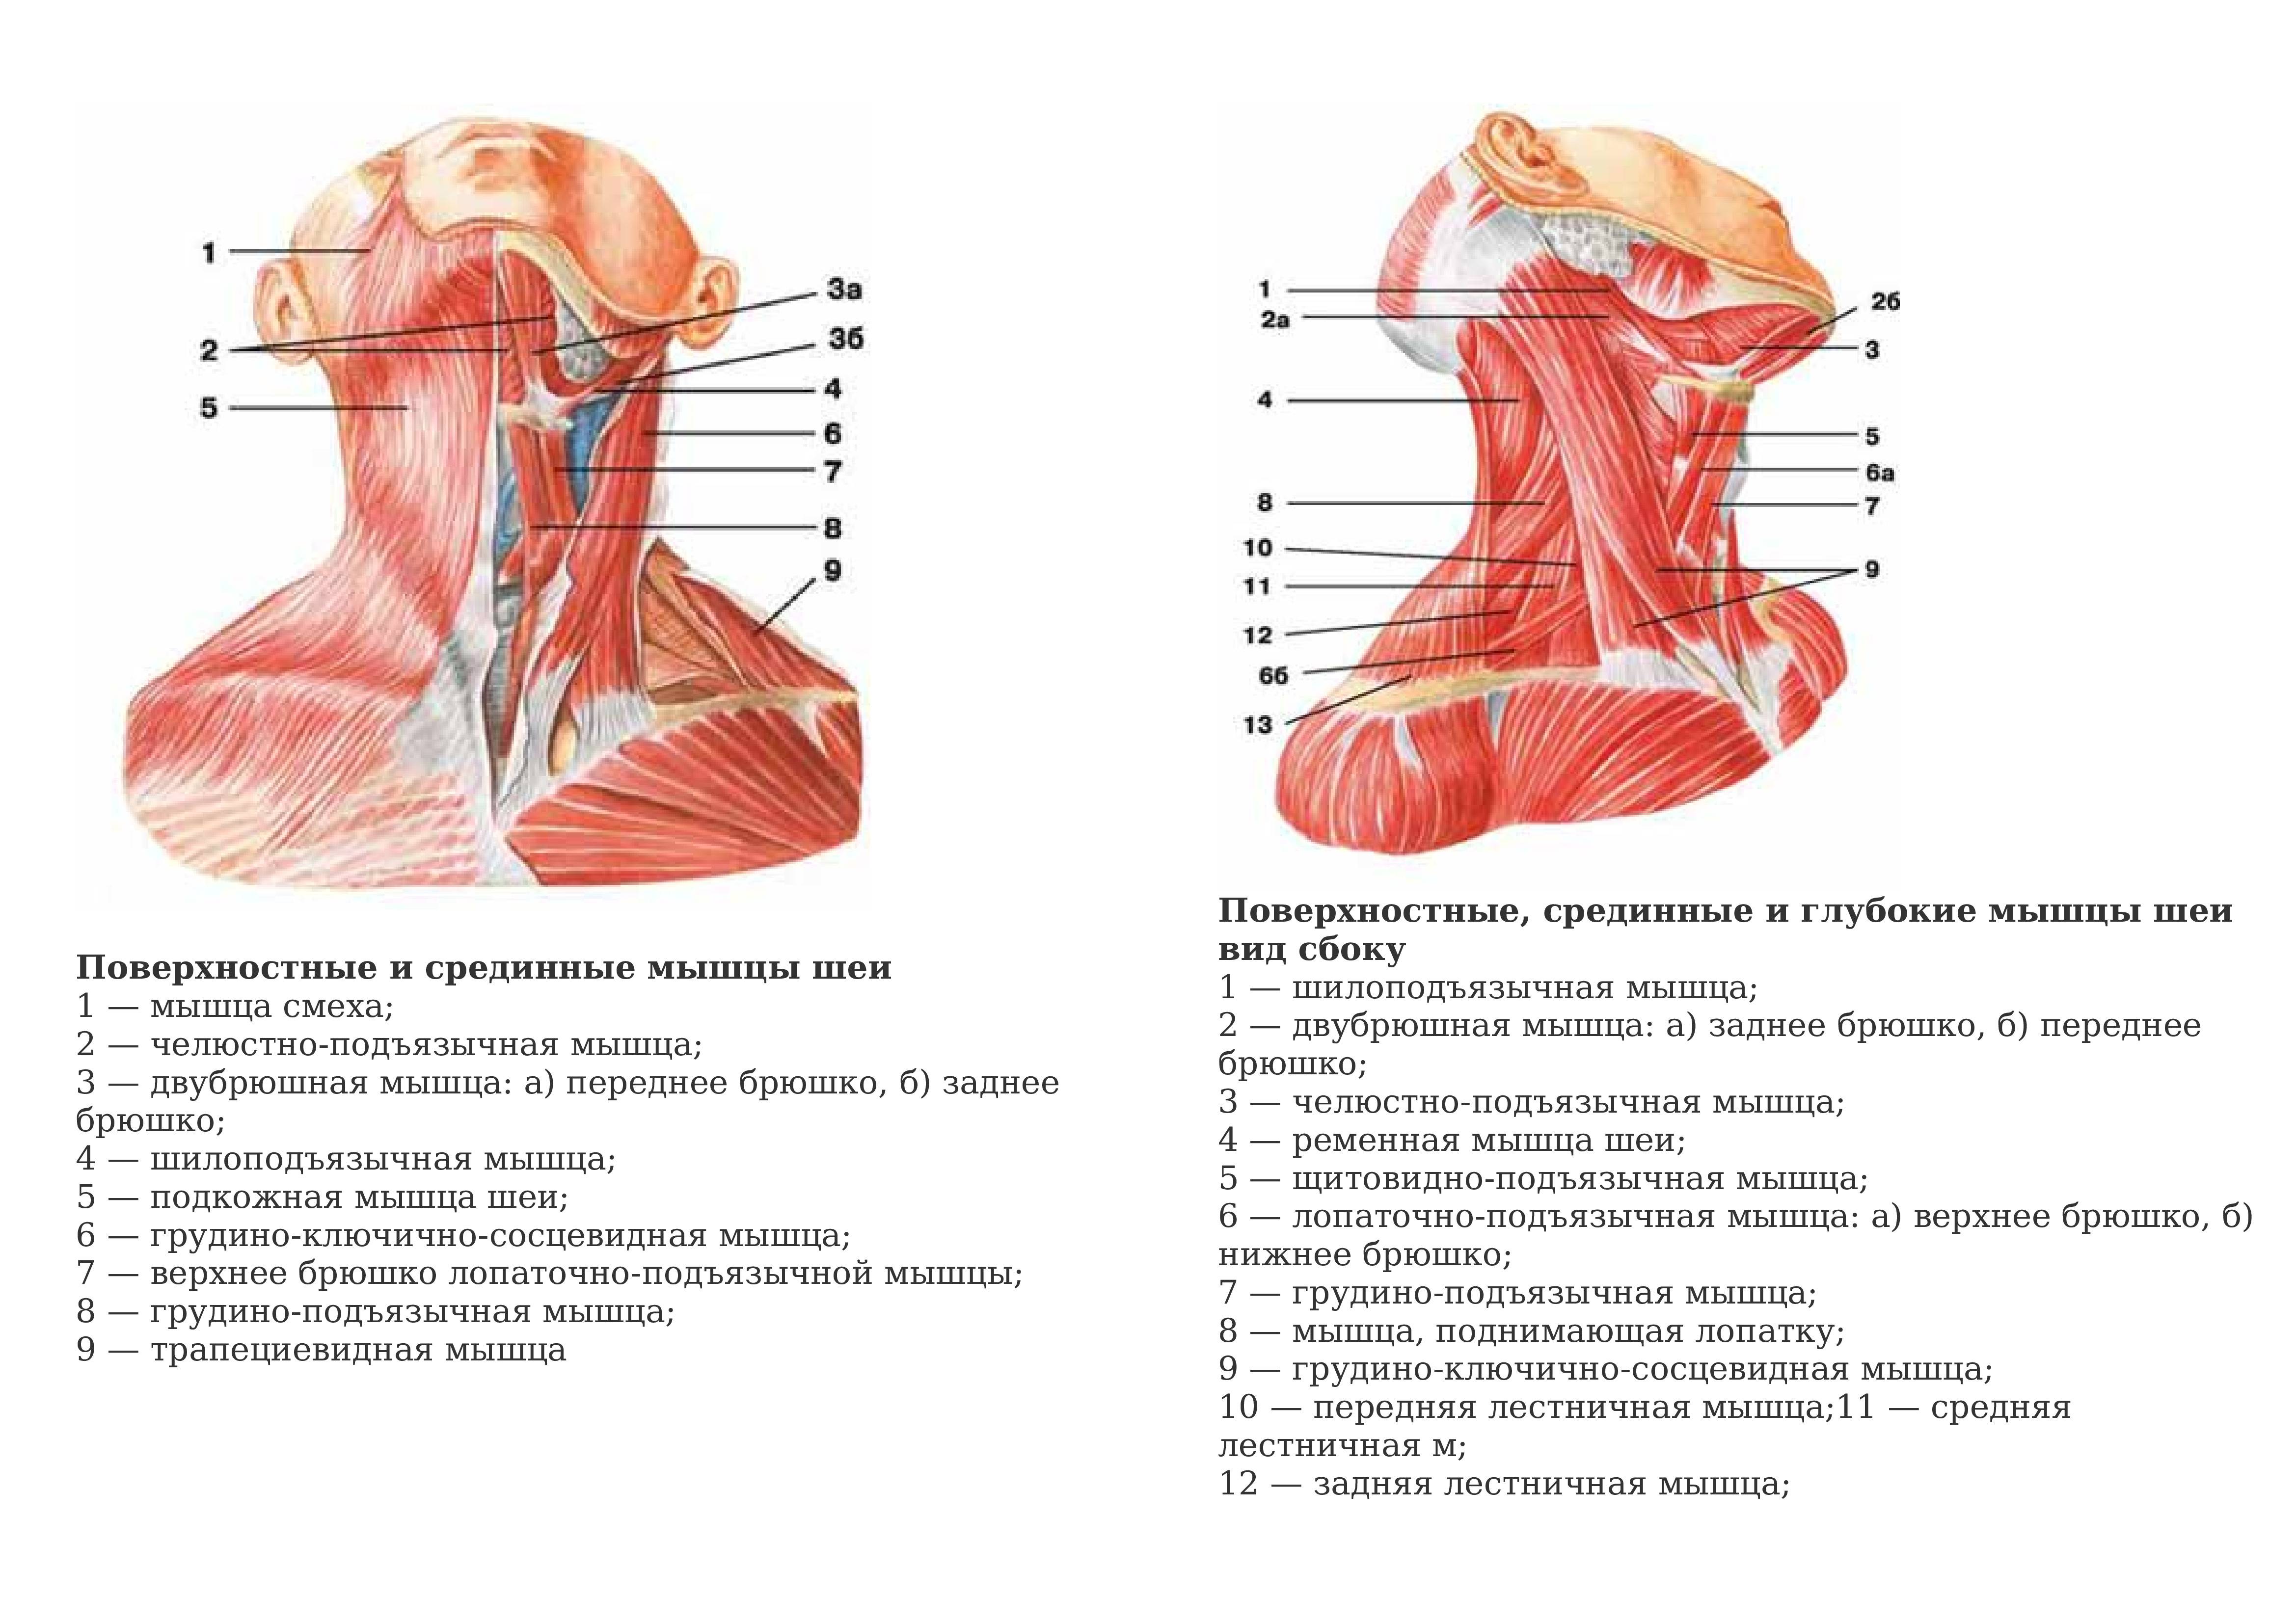 Мышцы головы и шеи: анатомия, таблица групп мышц, функции, расположение, иннервация и строение мышечной системы